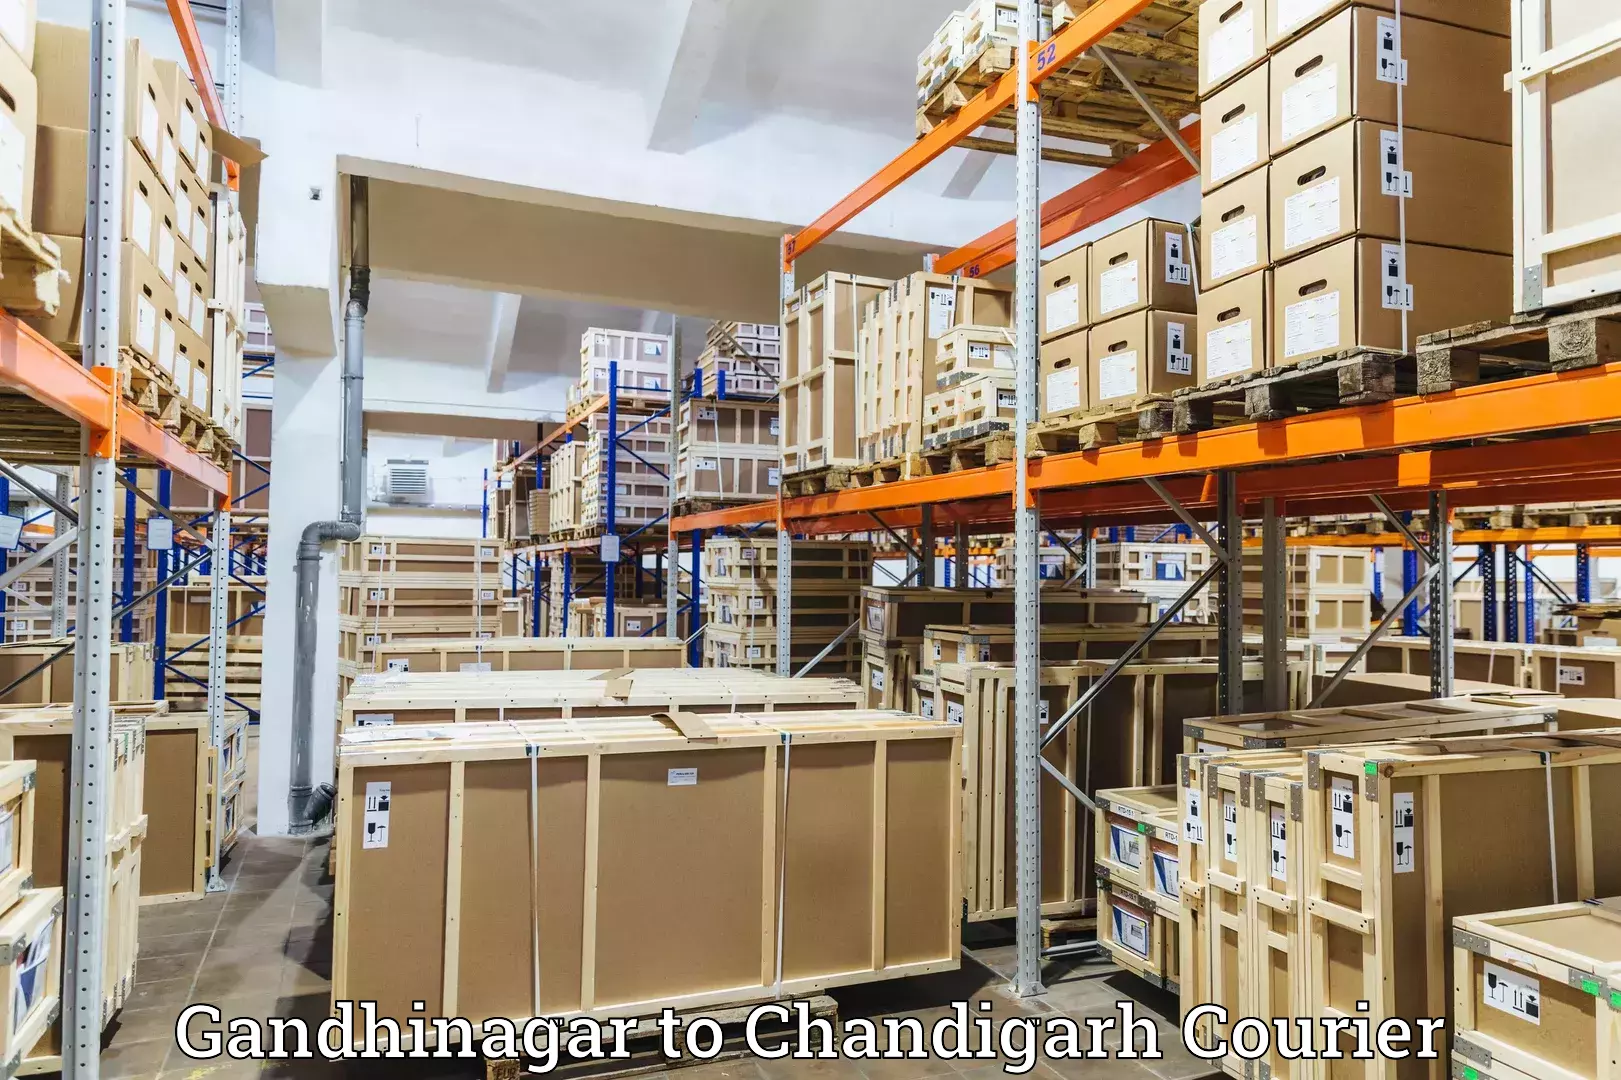 Nationwide parcel services Gandhinagar to Chandigarh